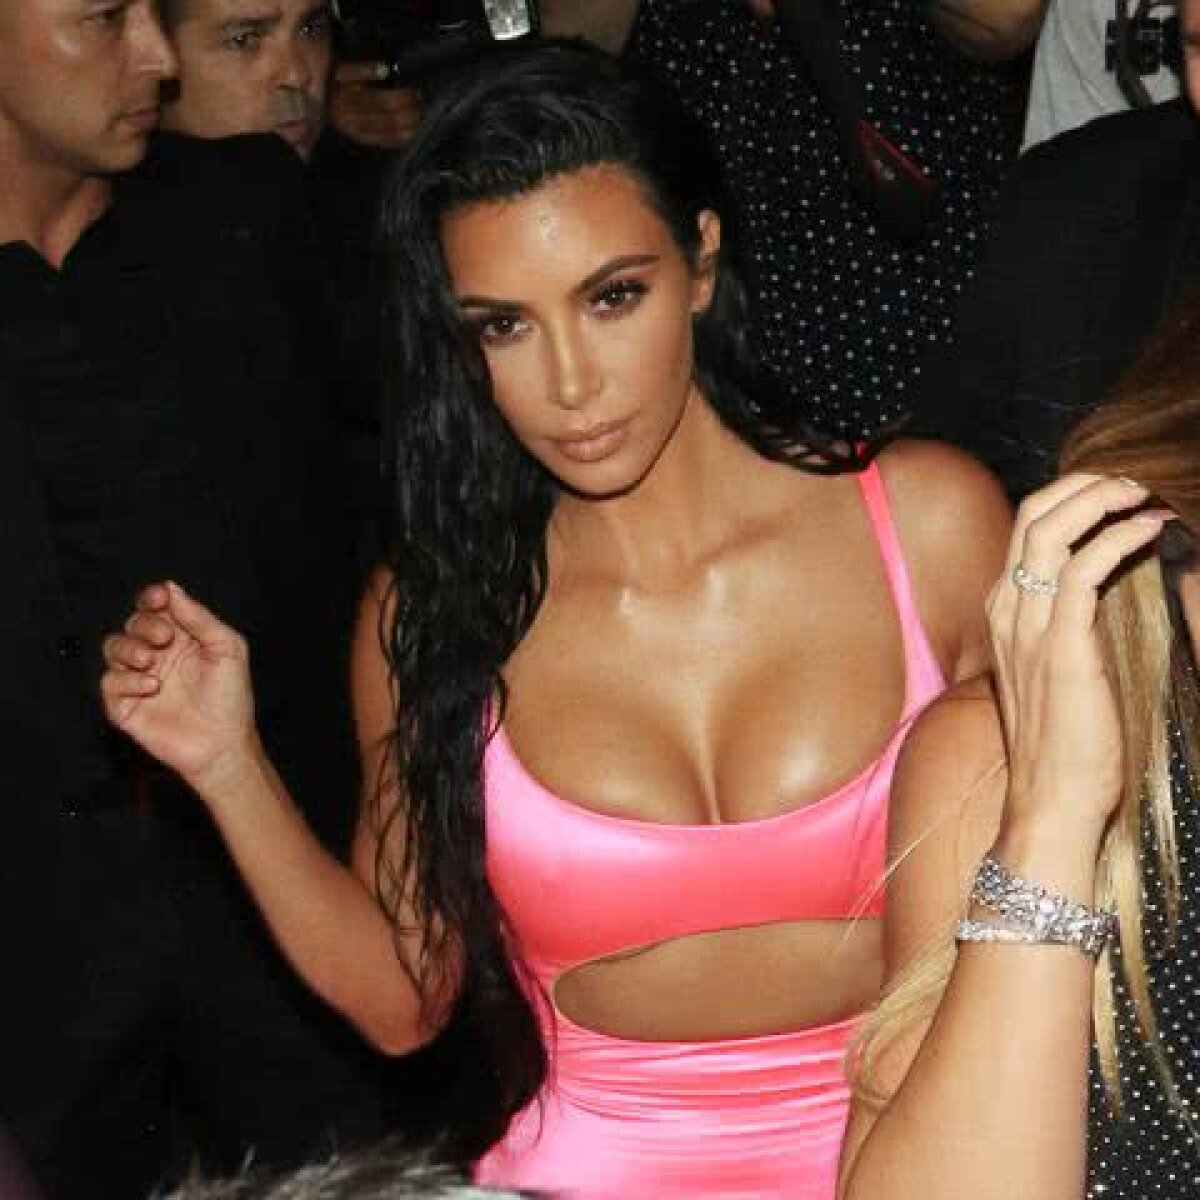 Kim Kardashian aruncă bomba: "Când m-am măritat eram drogată cu ecstasy! A doua oară când am luat, am făcut un sex tape"